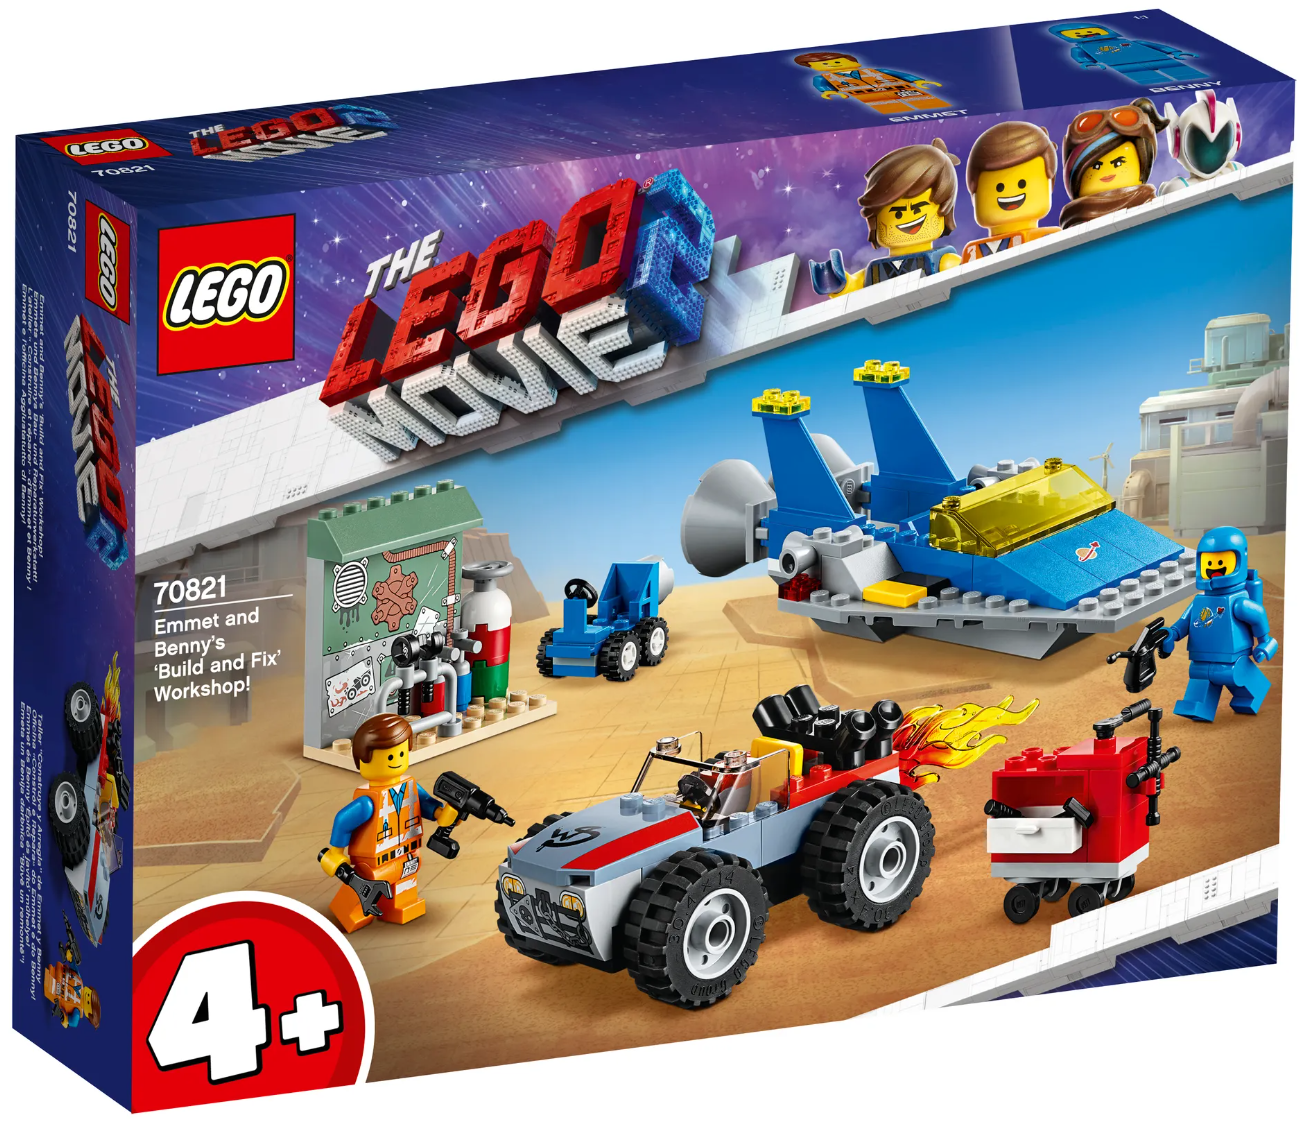 Slika za Lego 70821 Emmets und Bennys BAU - Space